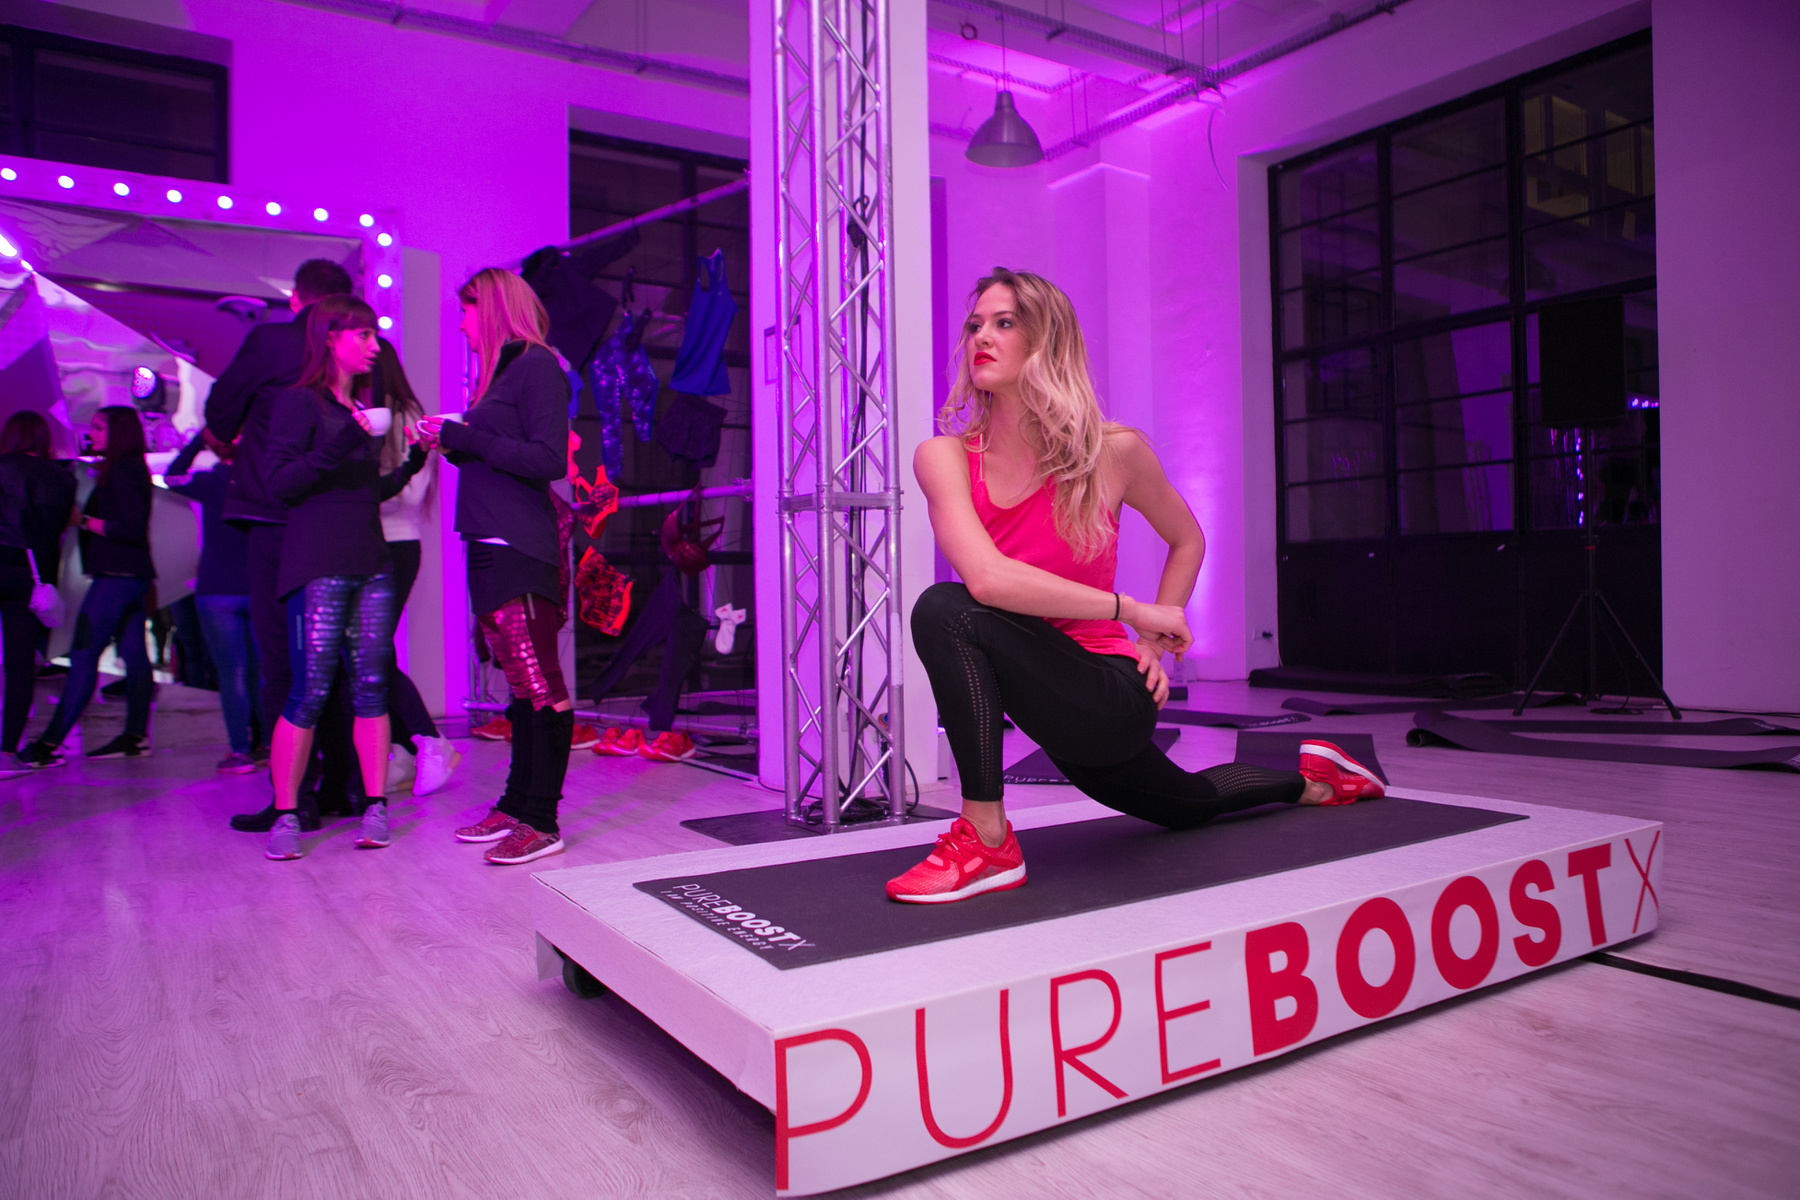 A PureBOOST X egy szembetűnő újítást is tartalmaz: a cipőtalp középen ívesen elválik a cipőtesttől, újszerű élményt biztosítva ezzel viselőjének.